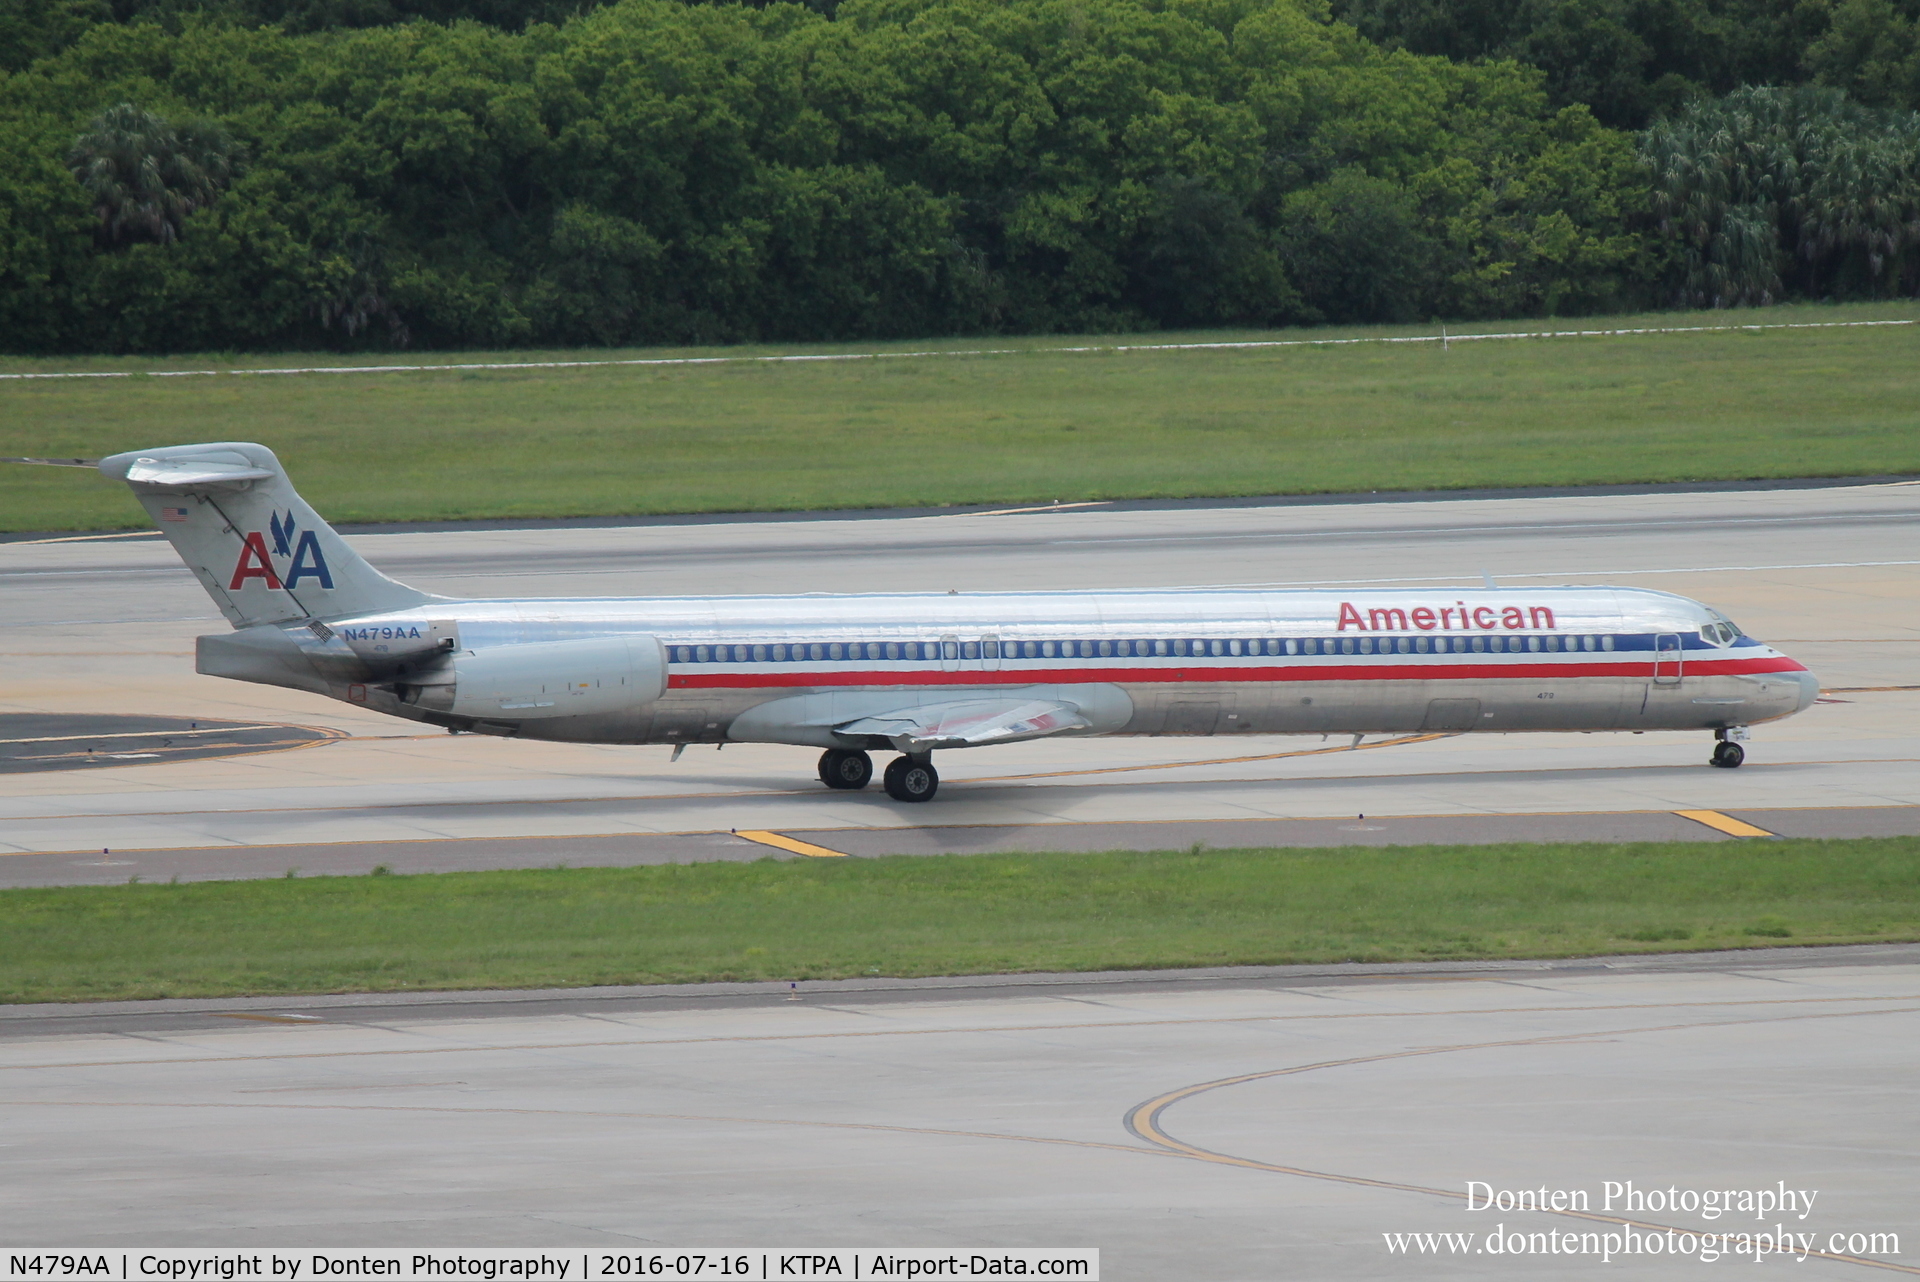 N479AA, 1988 McDonnell Douglas MD-82 (DC-9-82) C/N 49654, American Flight 1514 (N479AA) departs Tampa International Airport enroute to Chicago-O'Hare International Airport